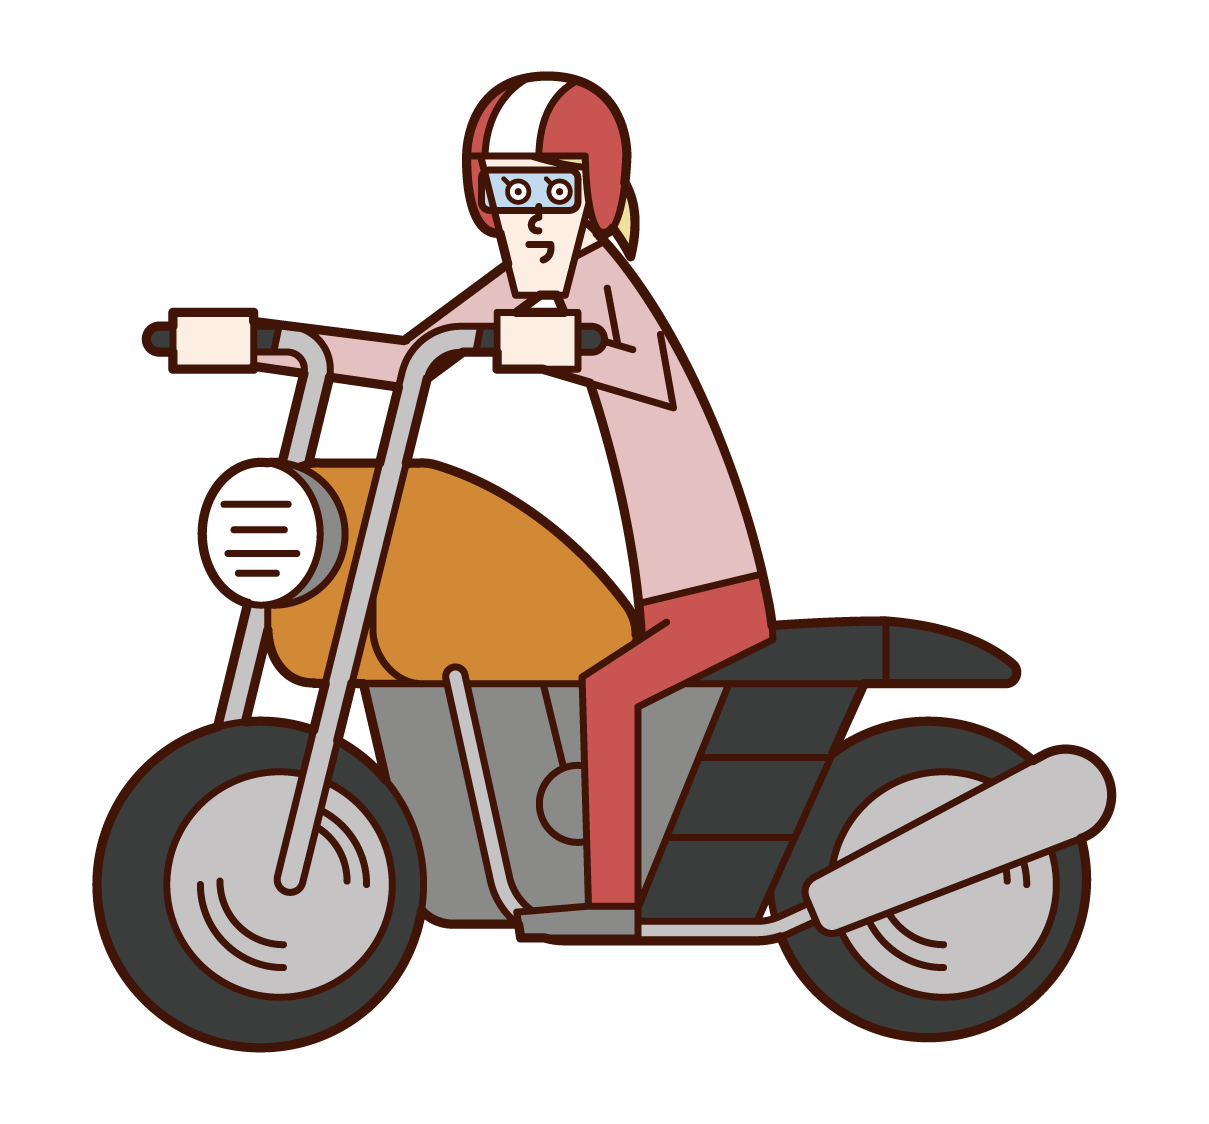 오토바이를 운전하는 사람 (여성)의 그림